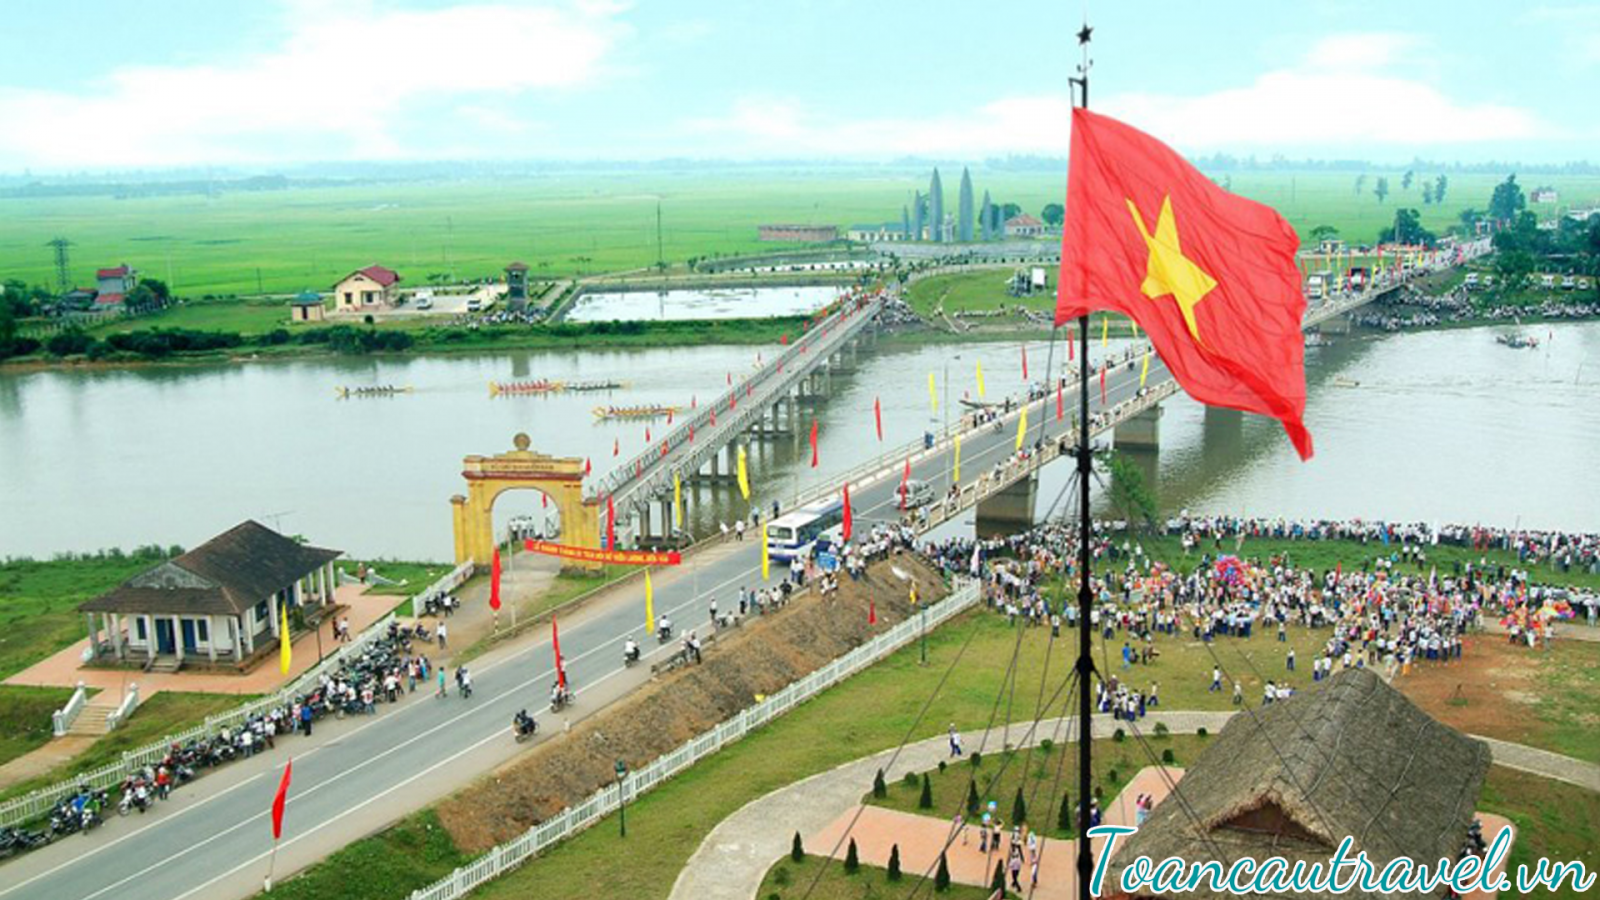 Cầu Hiền Lương – Sông Bến Hải